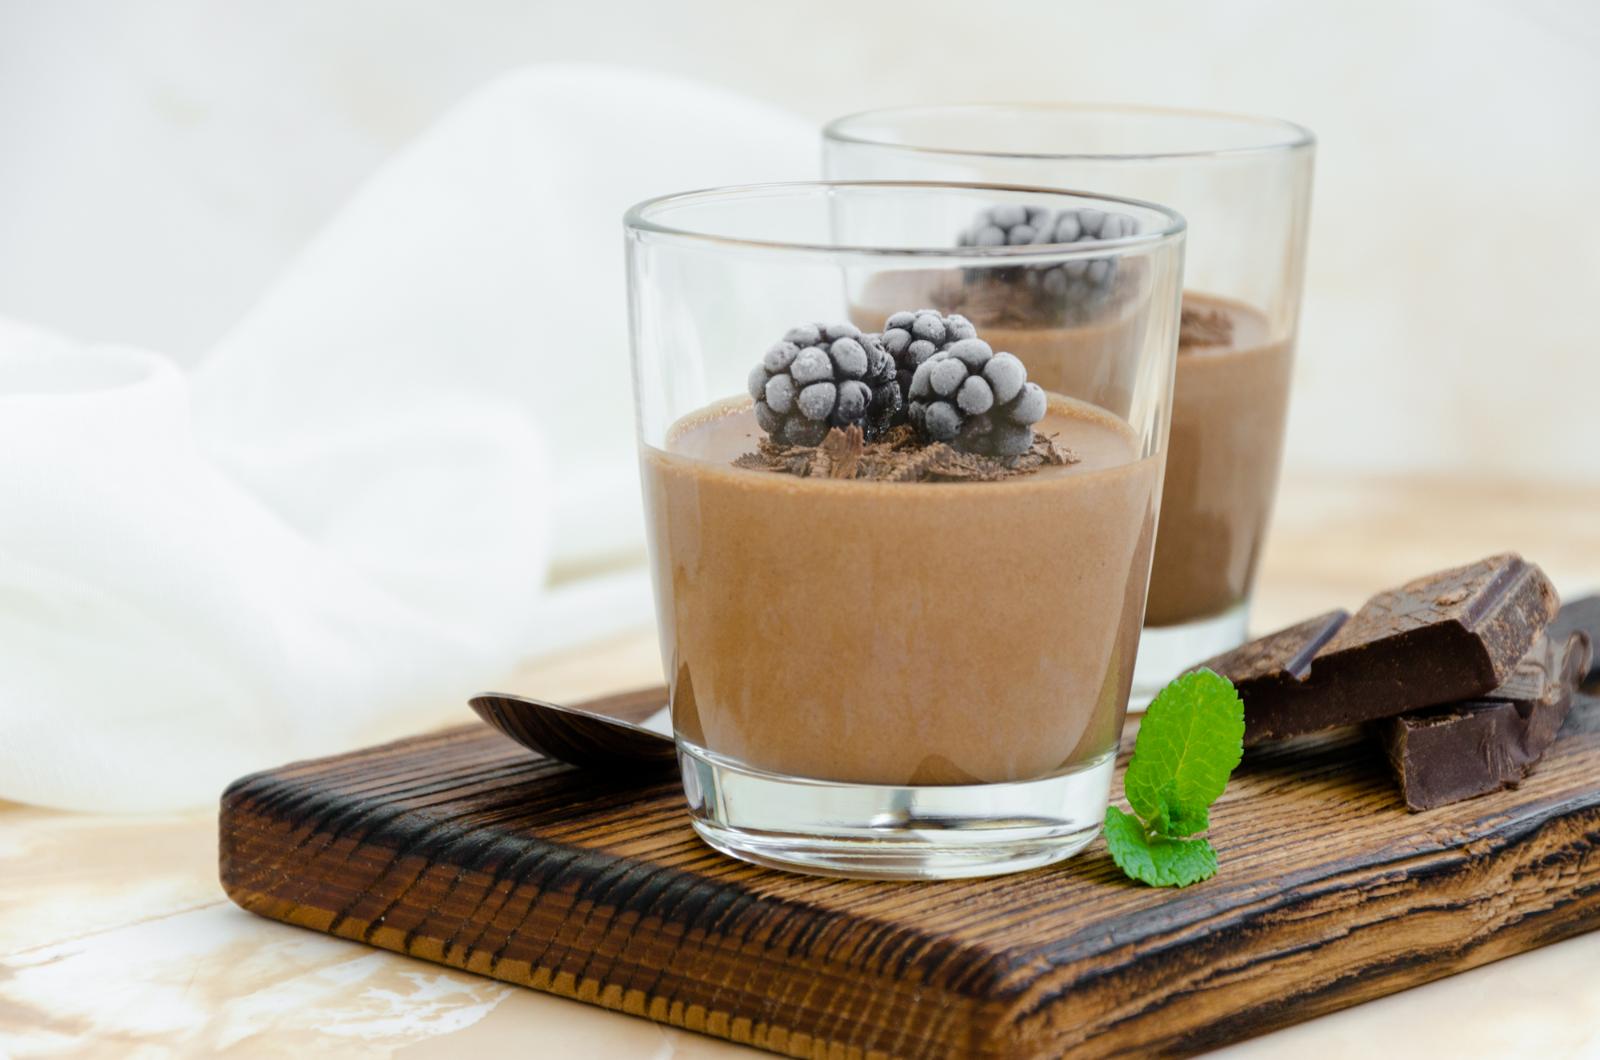 Классический десерт с новым вкусом: порадуйте близких шоколадной панна коттой